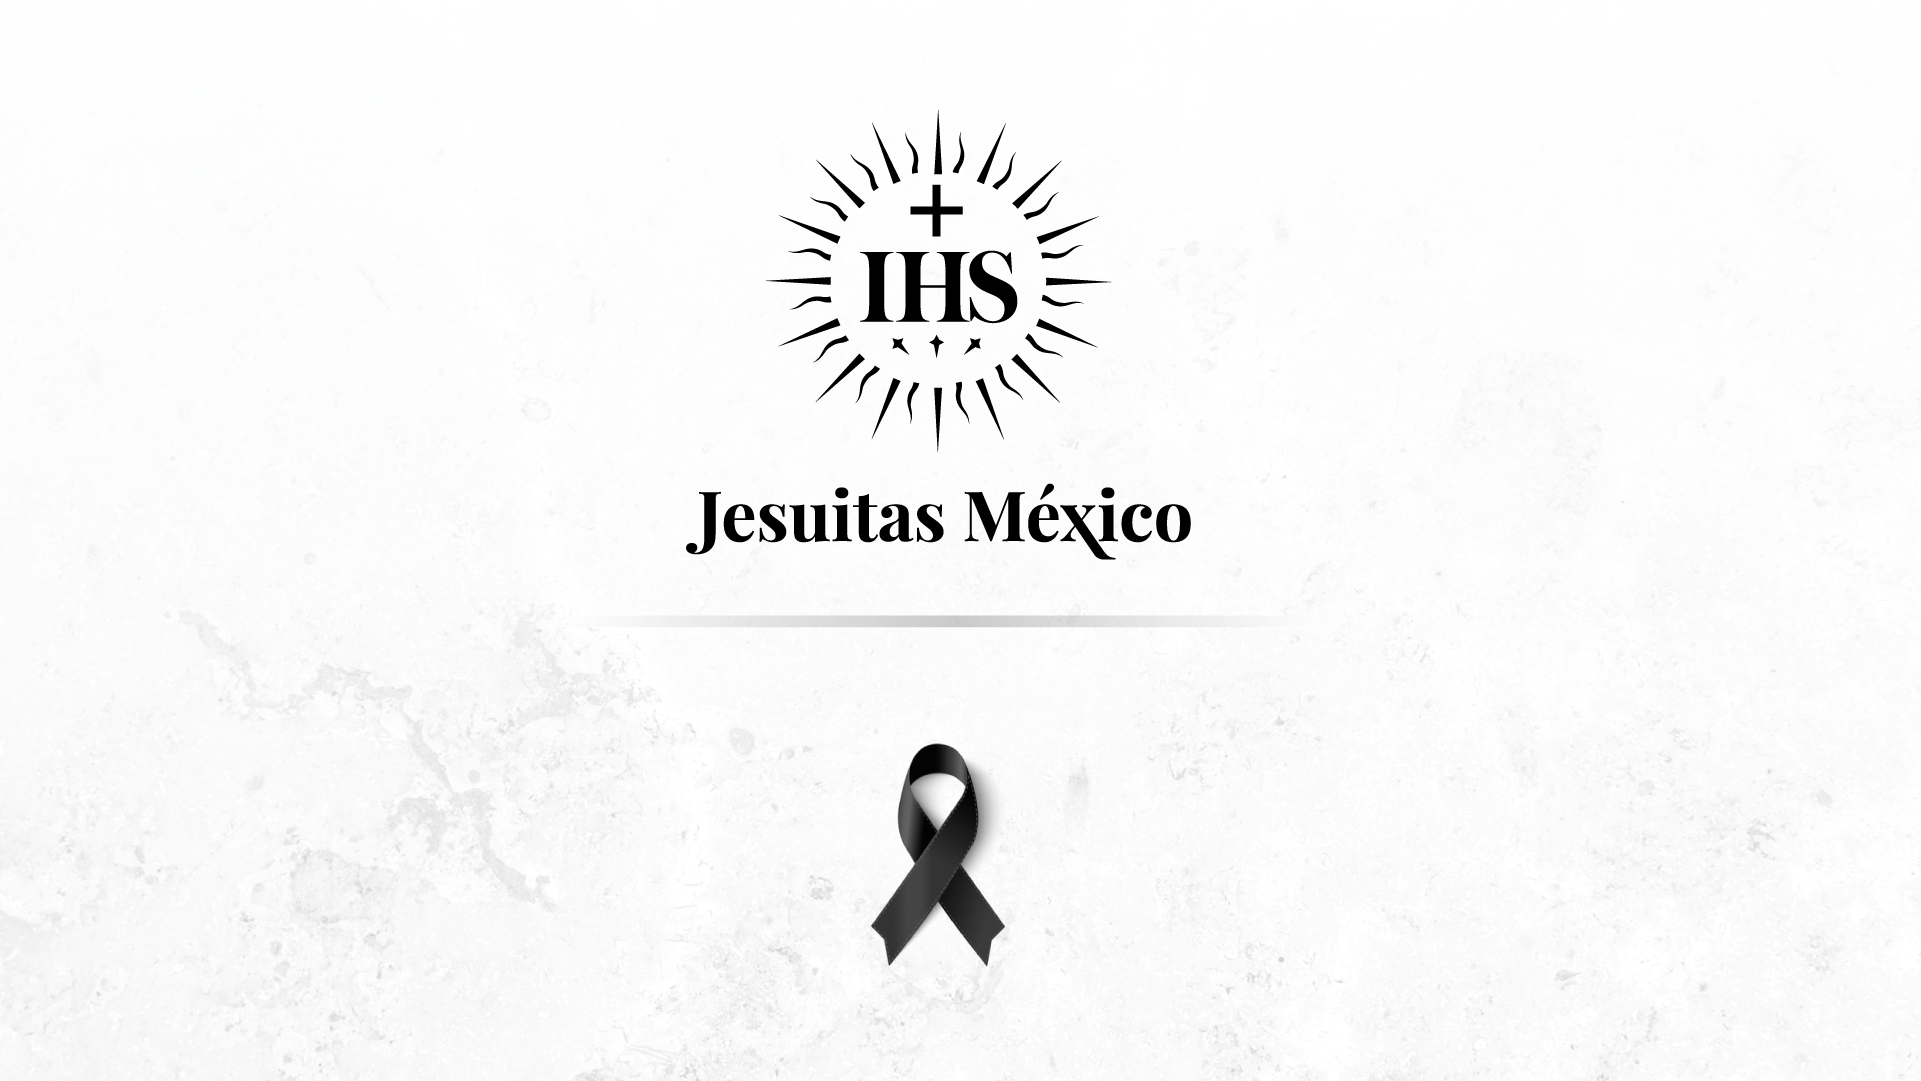 Tras asesinato de dos jesuitas, la orden religiosa teme por la comunidad de Cerocahui, Chihuahua: sacerdote | Video